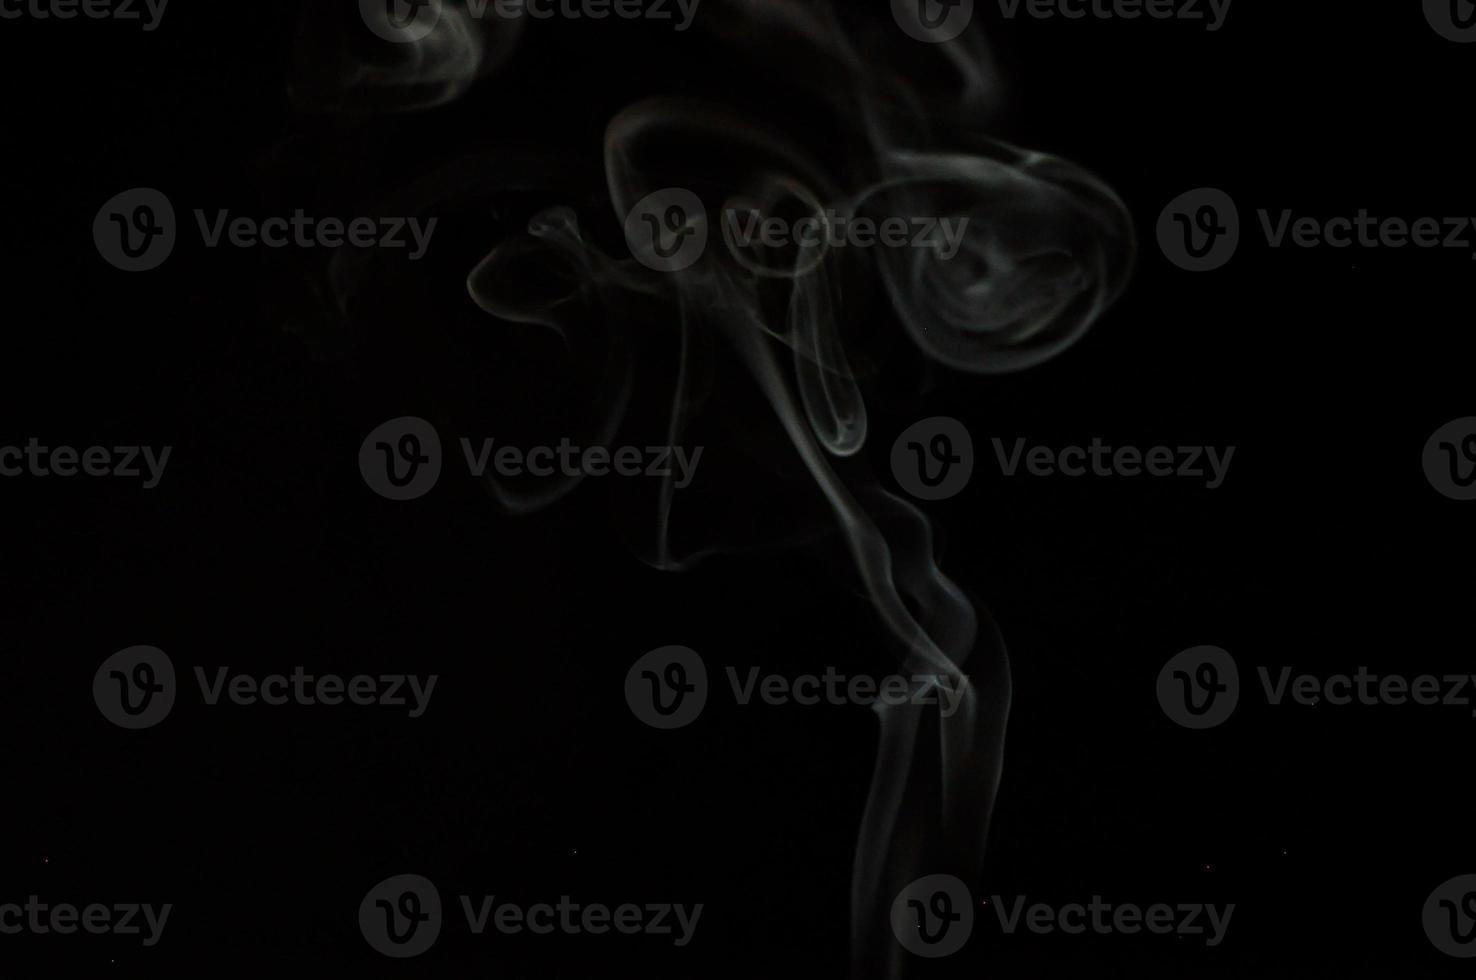 weißer Rauch auf einem schwarzen Hintergrund foto